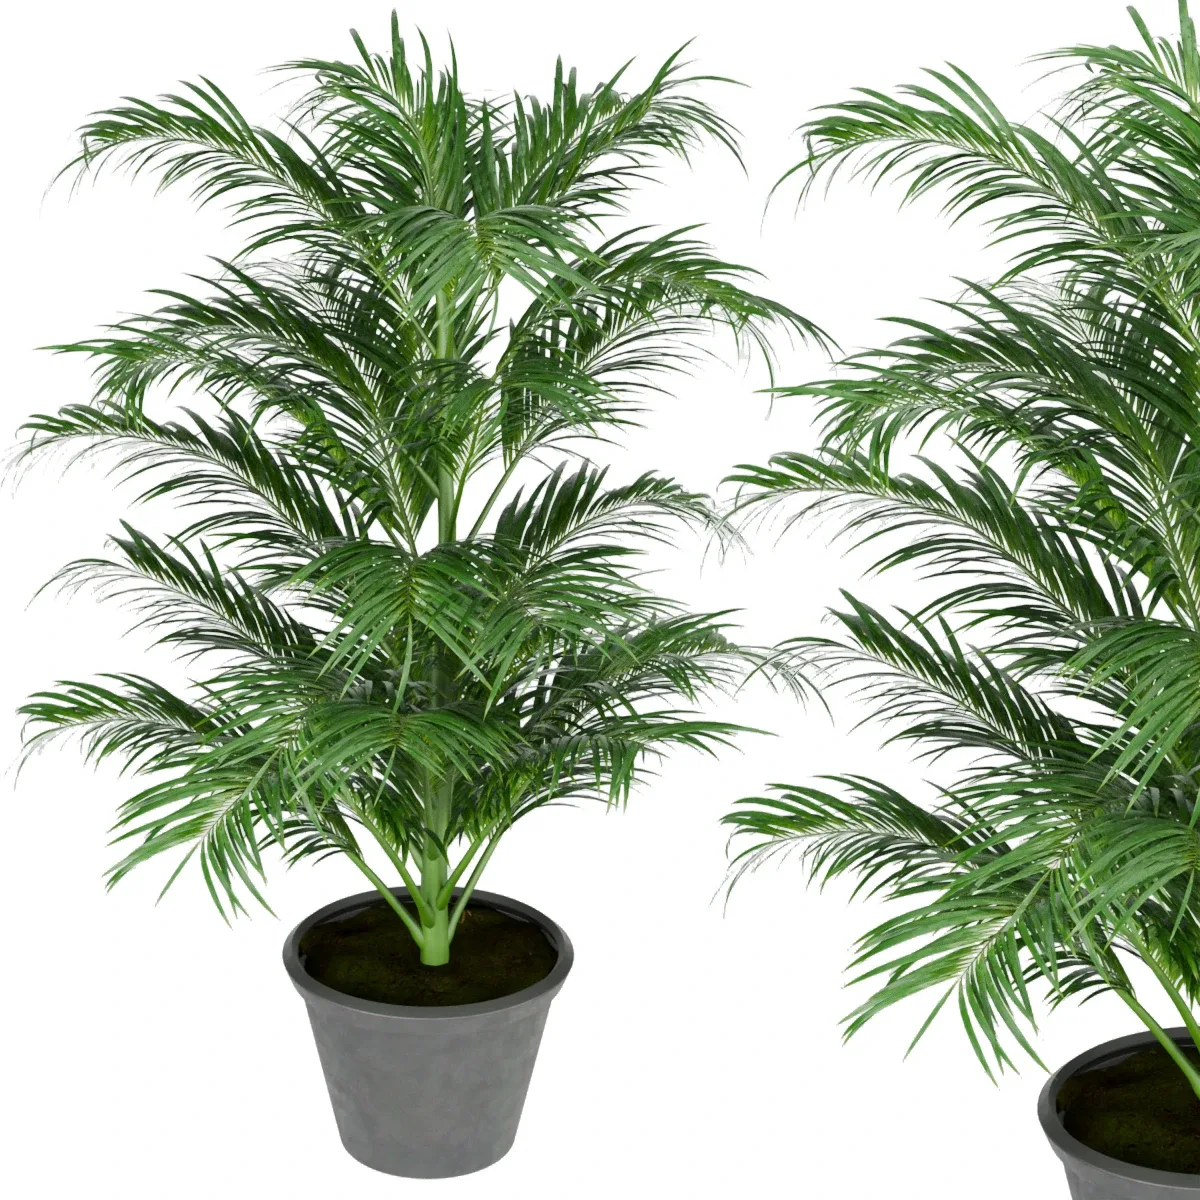 Collection plant vol 256 - Indoor - palm - blender - 3dmax - cinema 4d